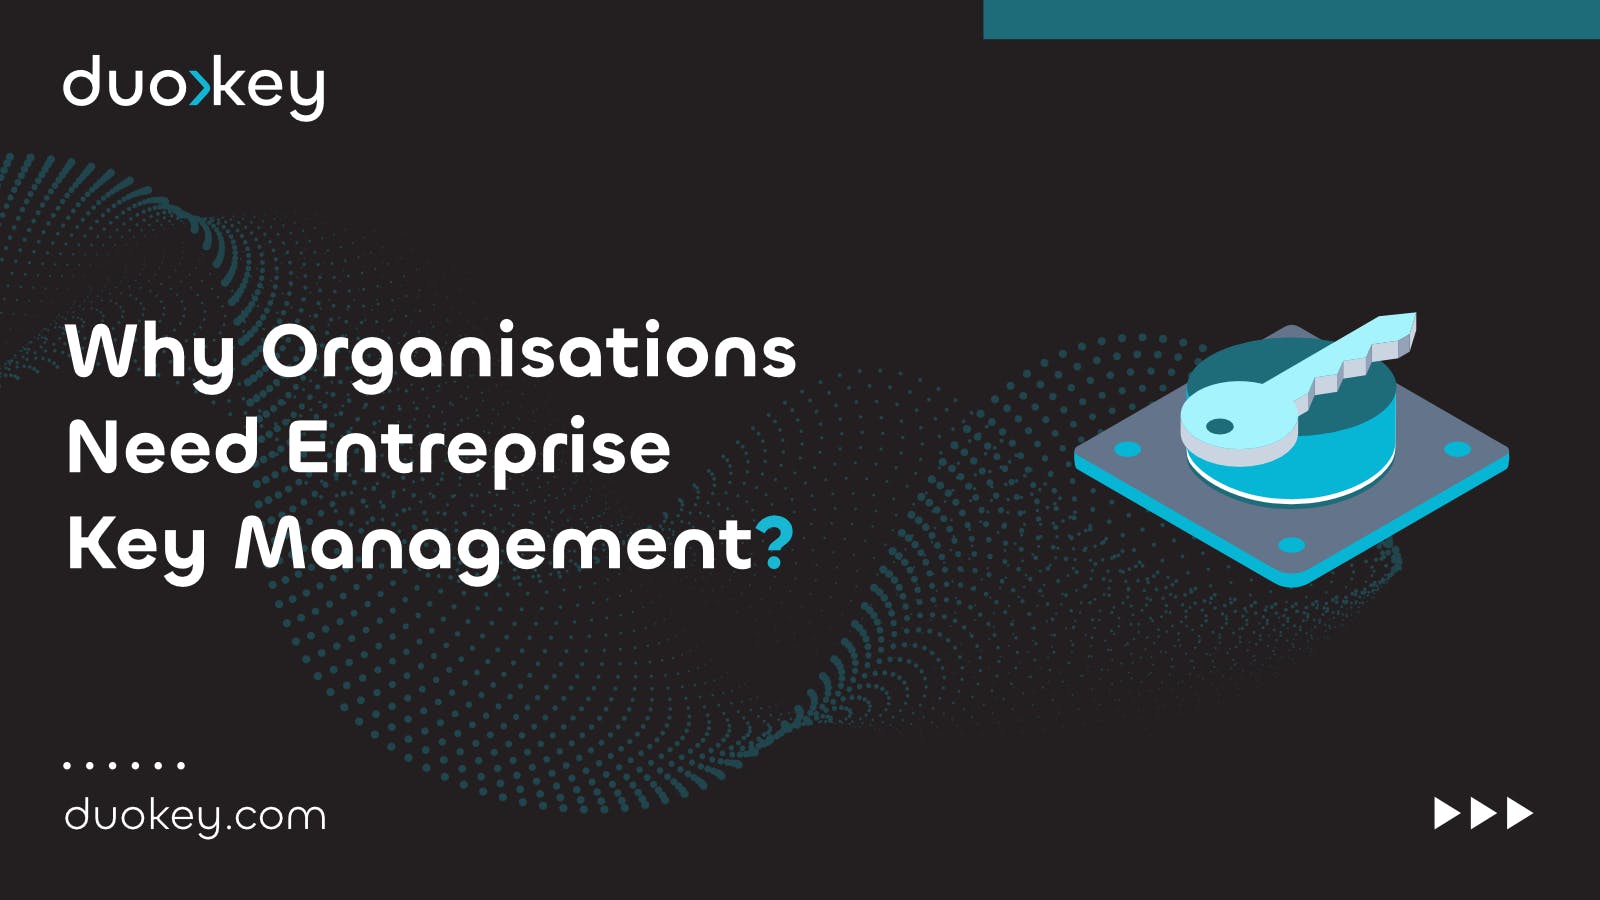 Why Organisations Need Entreprise Key Management (EKM)